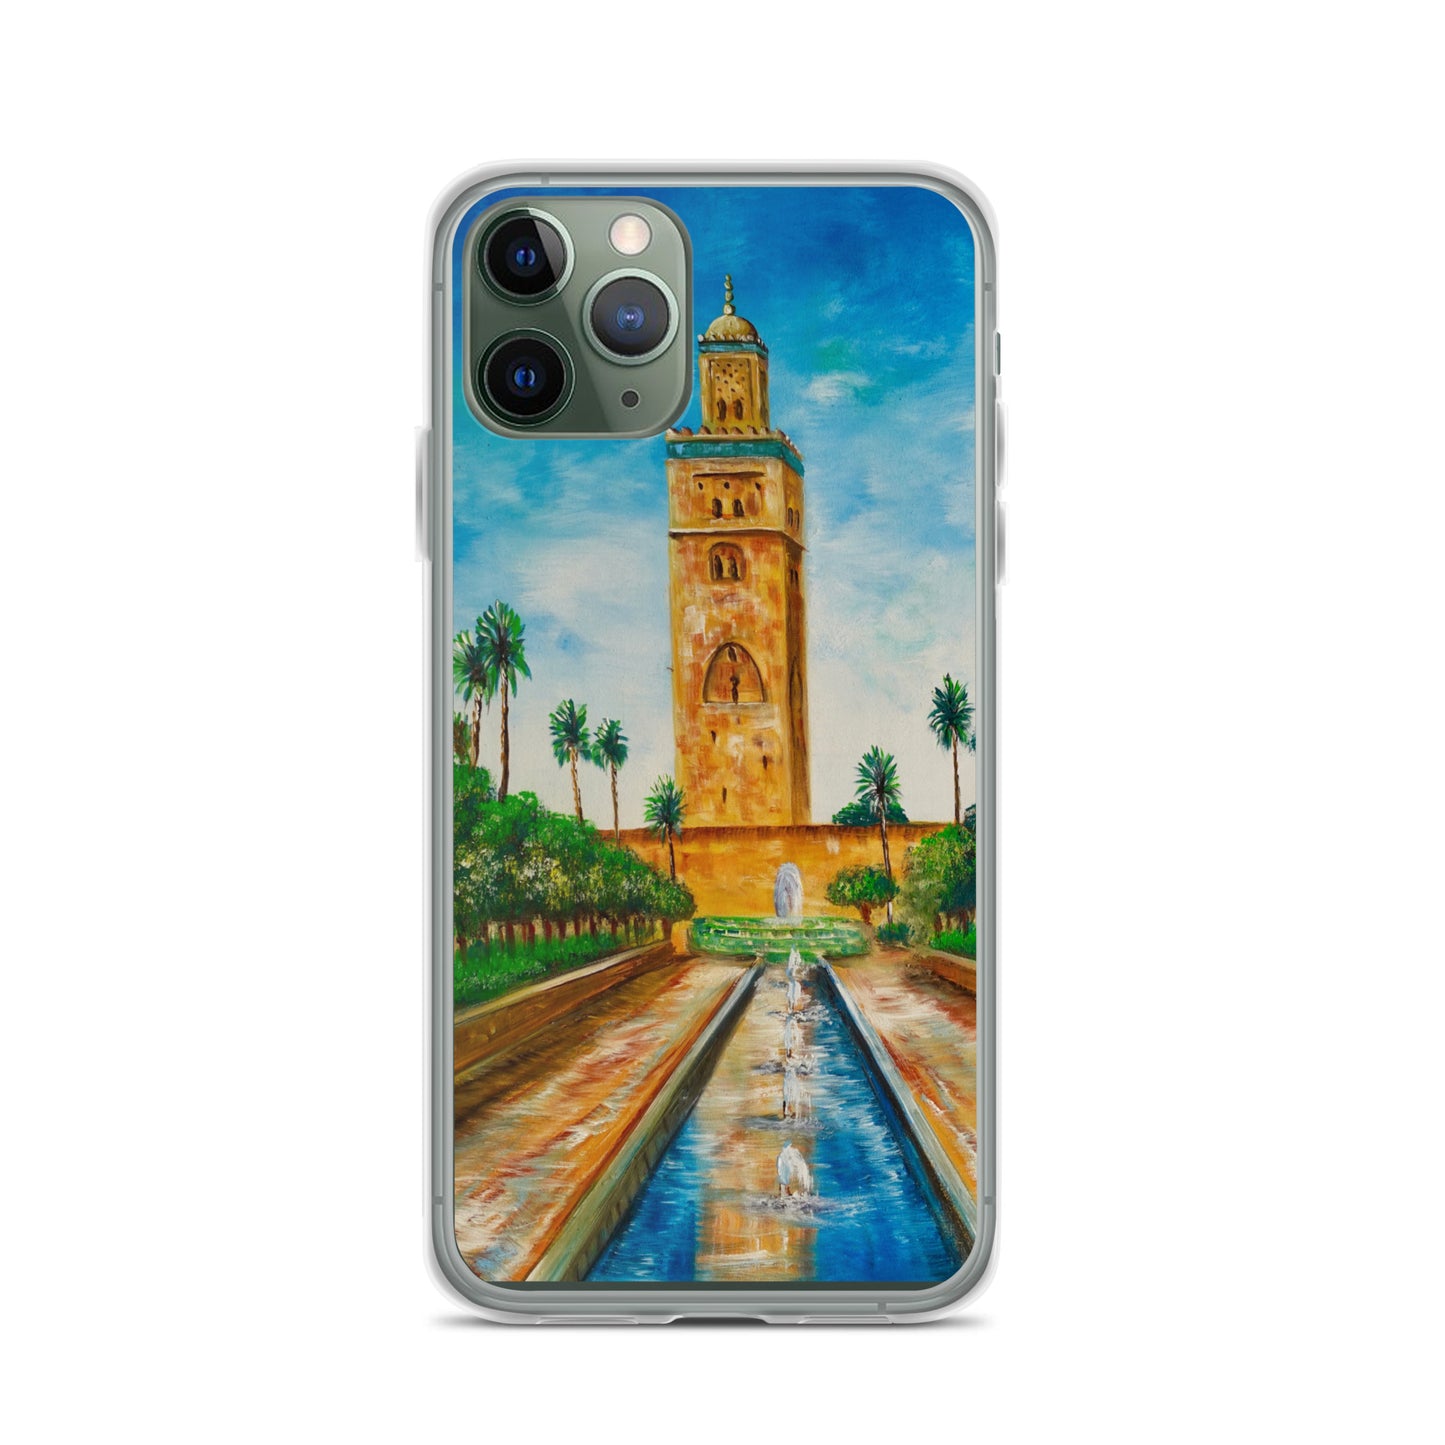 Carcasa para iPhone " La mezquita de Marrakech"